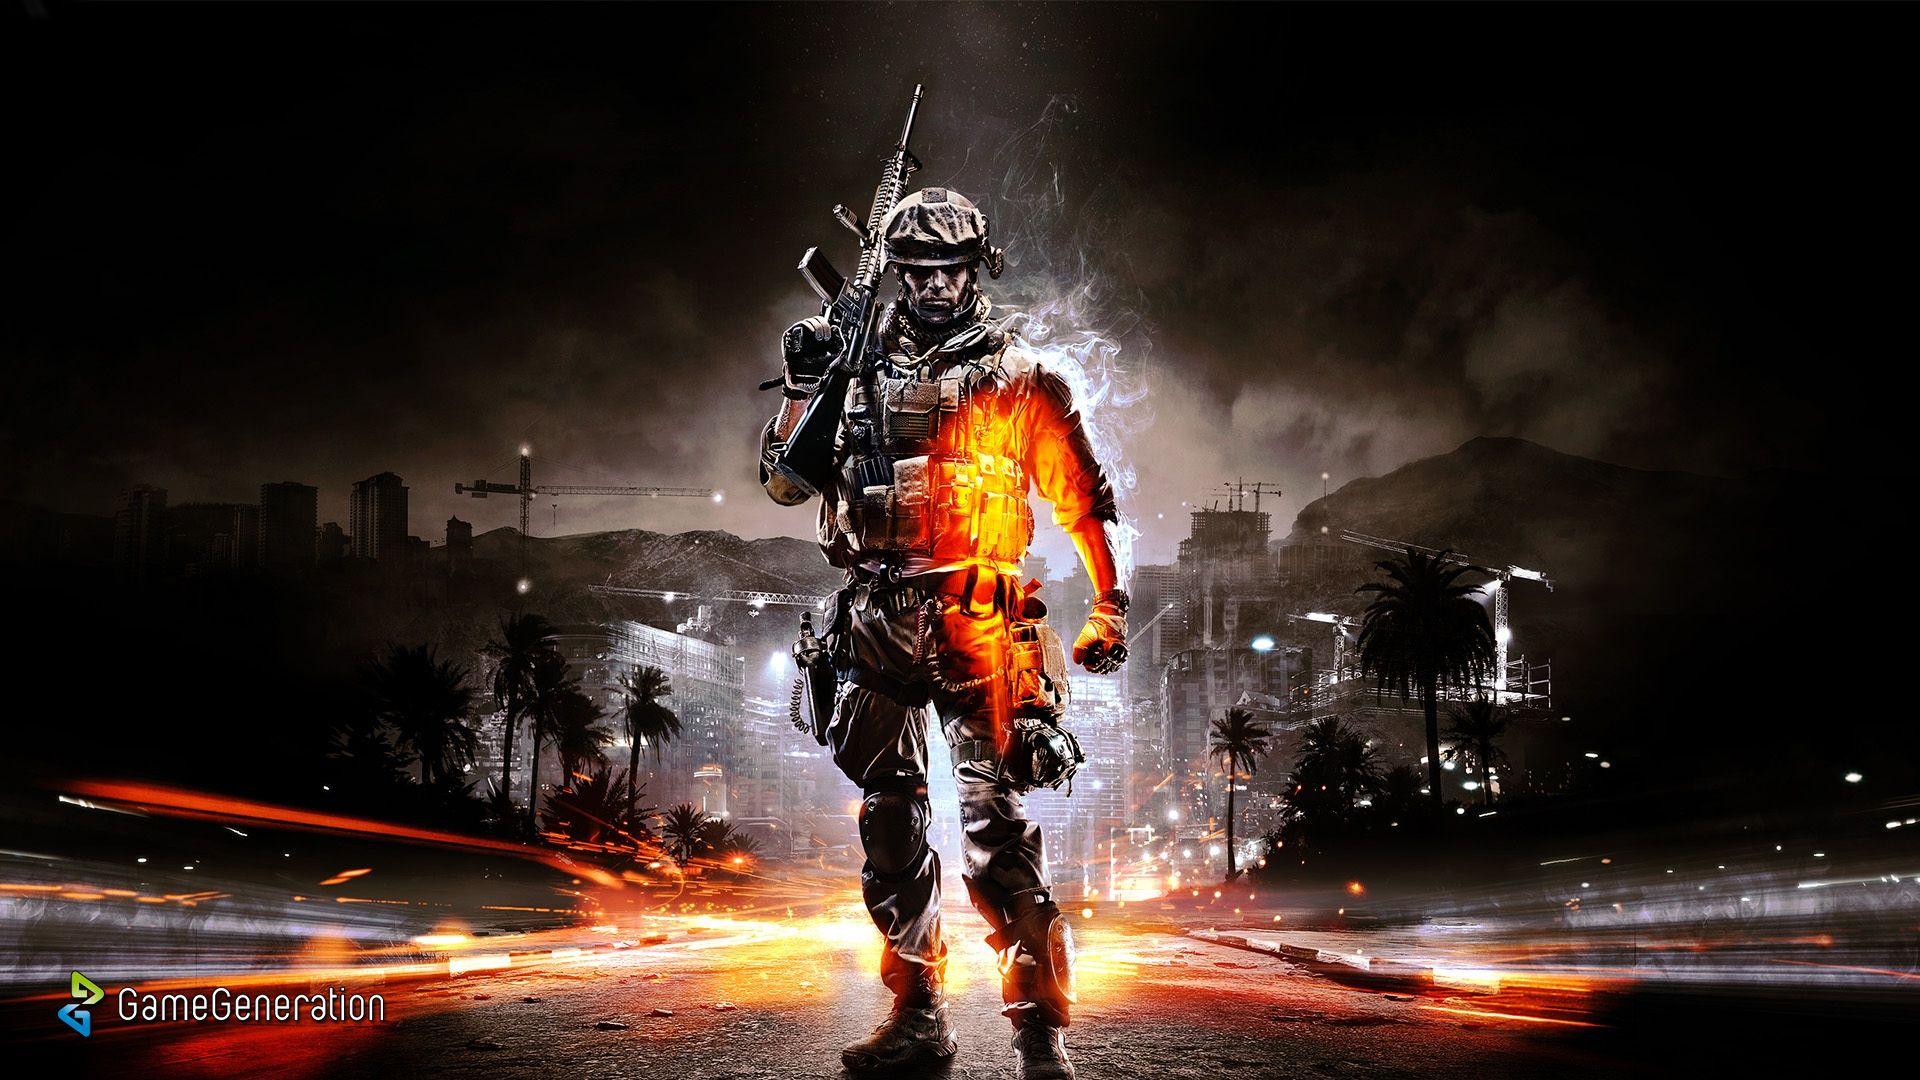 Battlefield 3 Wallpaper, HD Image Battlefield 3 Collection, LL.GL